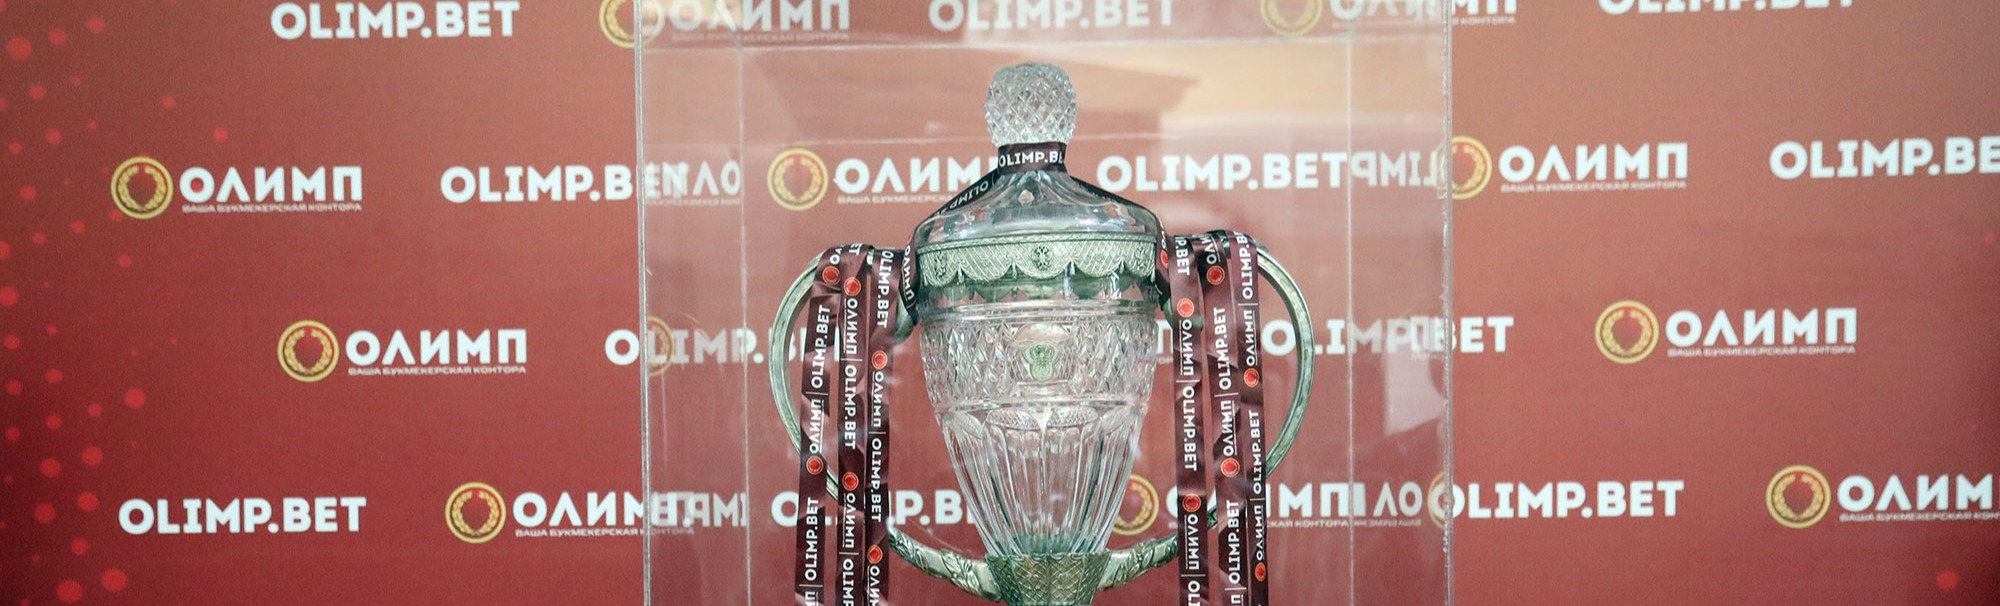 Финал Кубка России и матч за Суперкубок России по футболу будет проходить в Лужниках